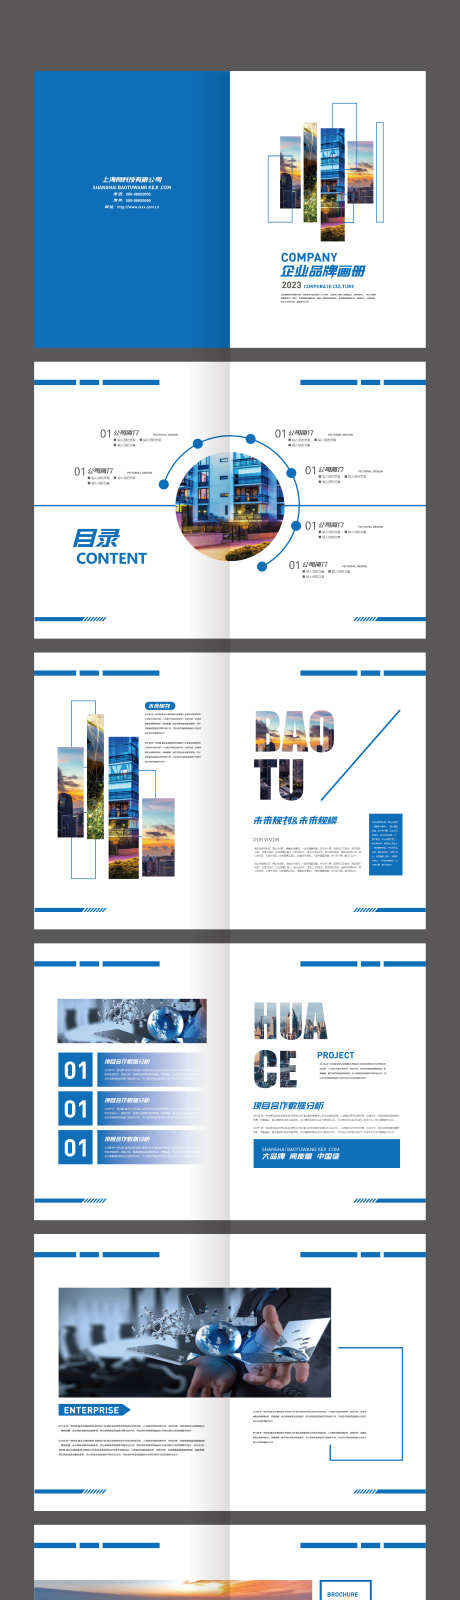 蓝色简约创意品牌企业画册_源文件下载_AI格式_2363X12632像素-企业画册,品牌,创意,简约,蓝色-作品编号:2024010909539778-志设-zs9.com